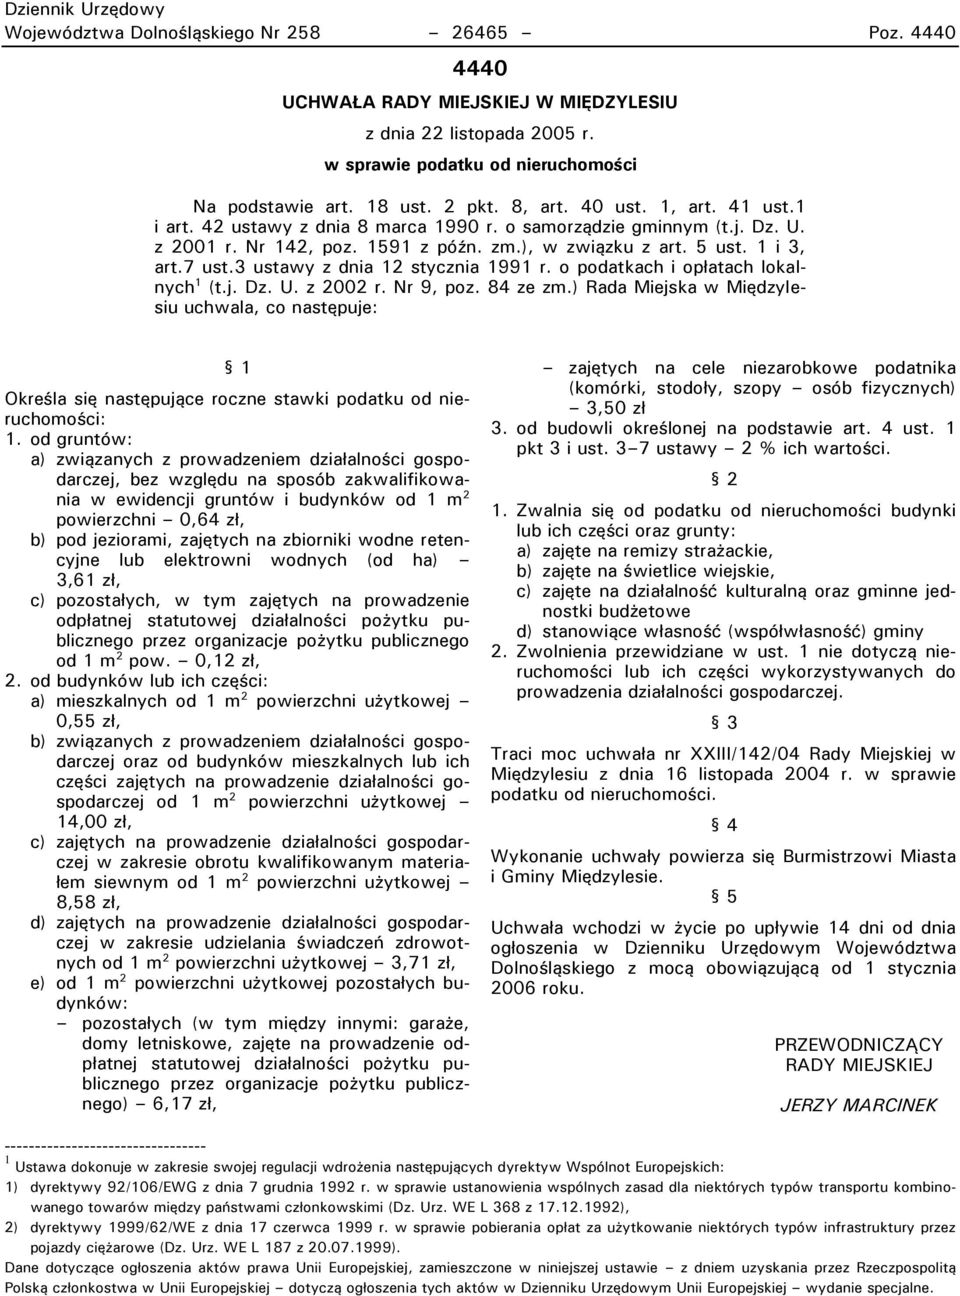 3 ustawy z dnia 12 stycznia 1991 r. o podatkach i opłatach lokalnych 1 (t.j. Dz. U. z 2002 r. Nr 9, poz. 84 ze zm.